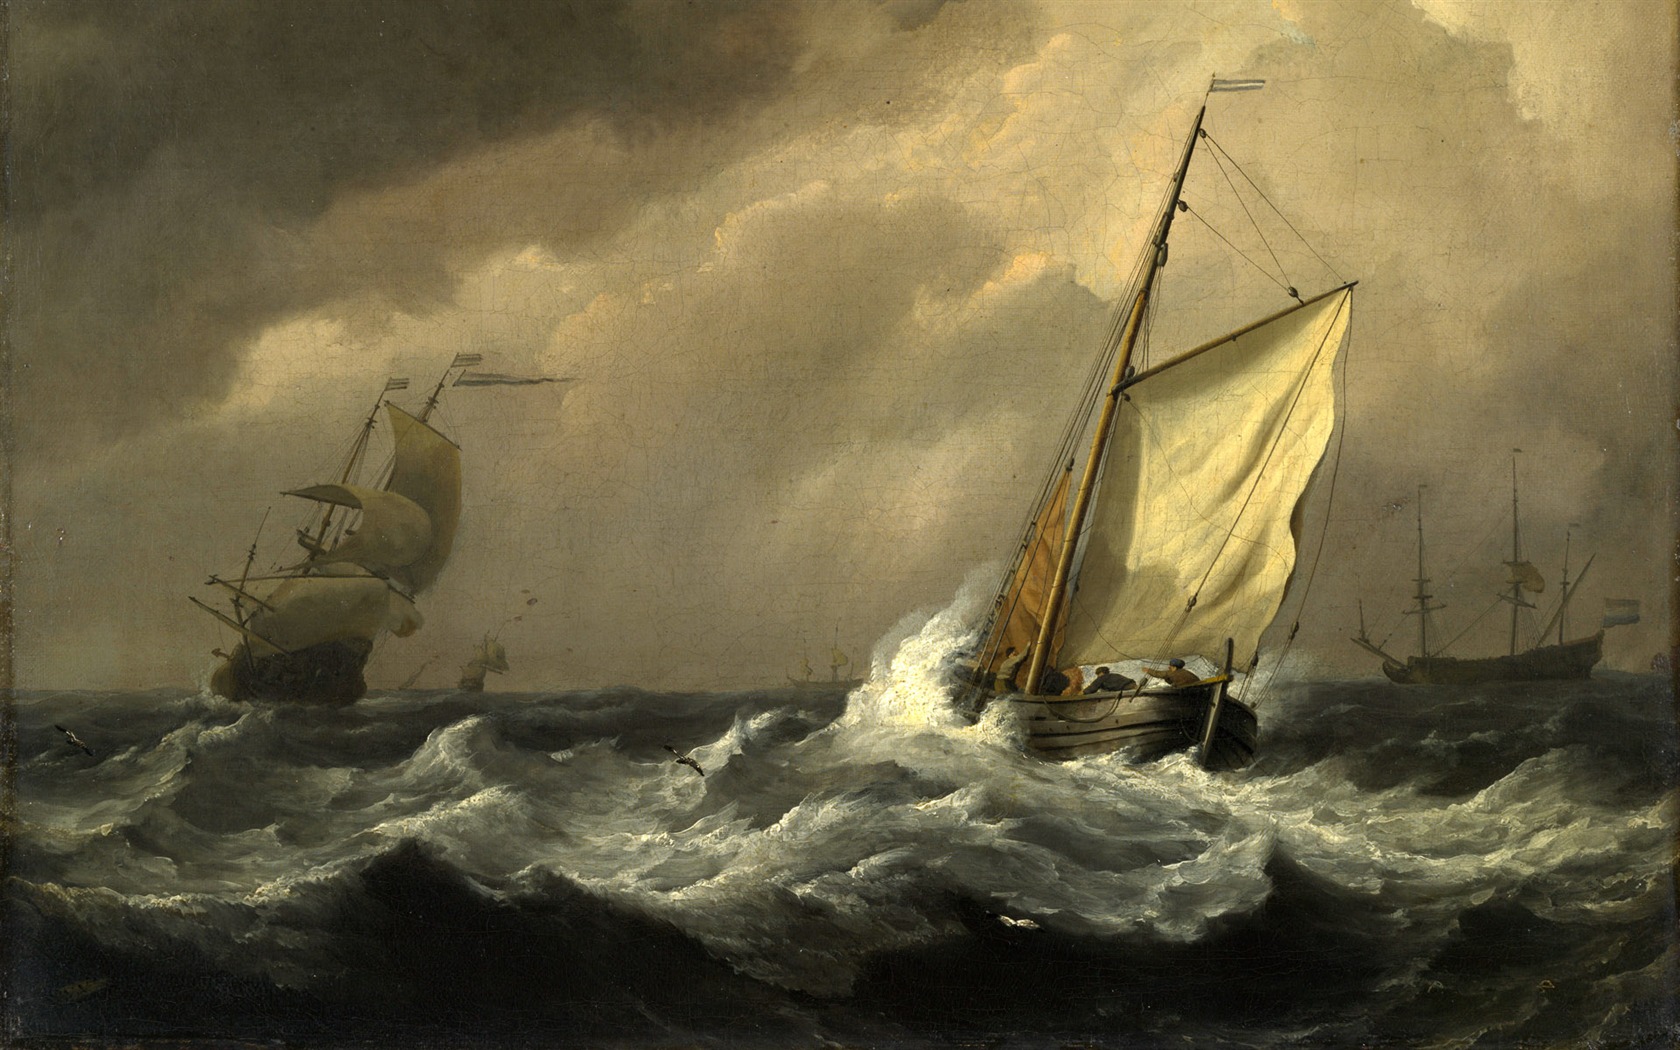 伦敦画廊帆船 壁纸(二)14 - 1680x1050